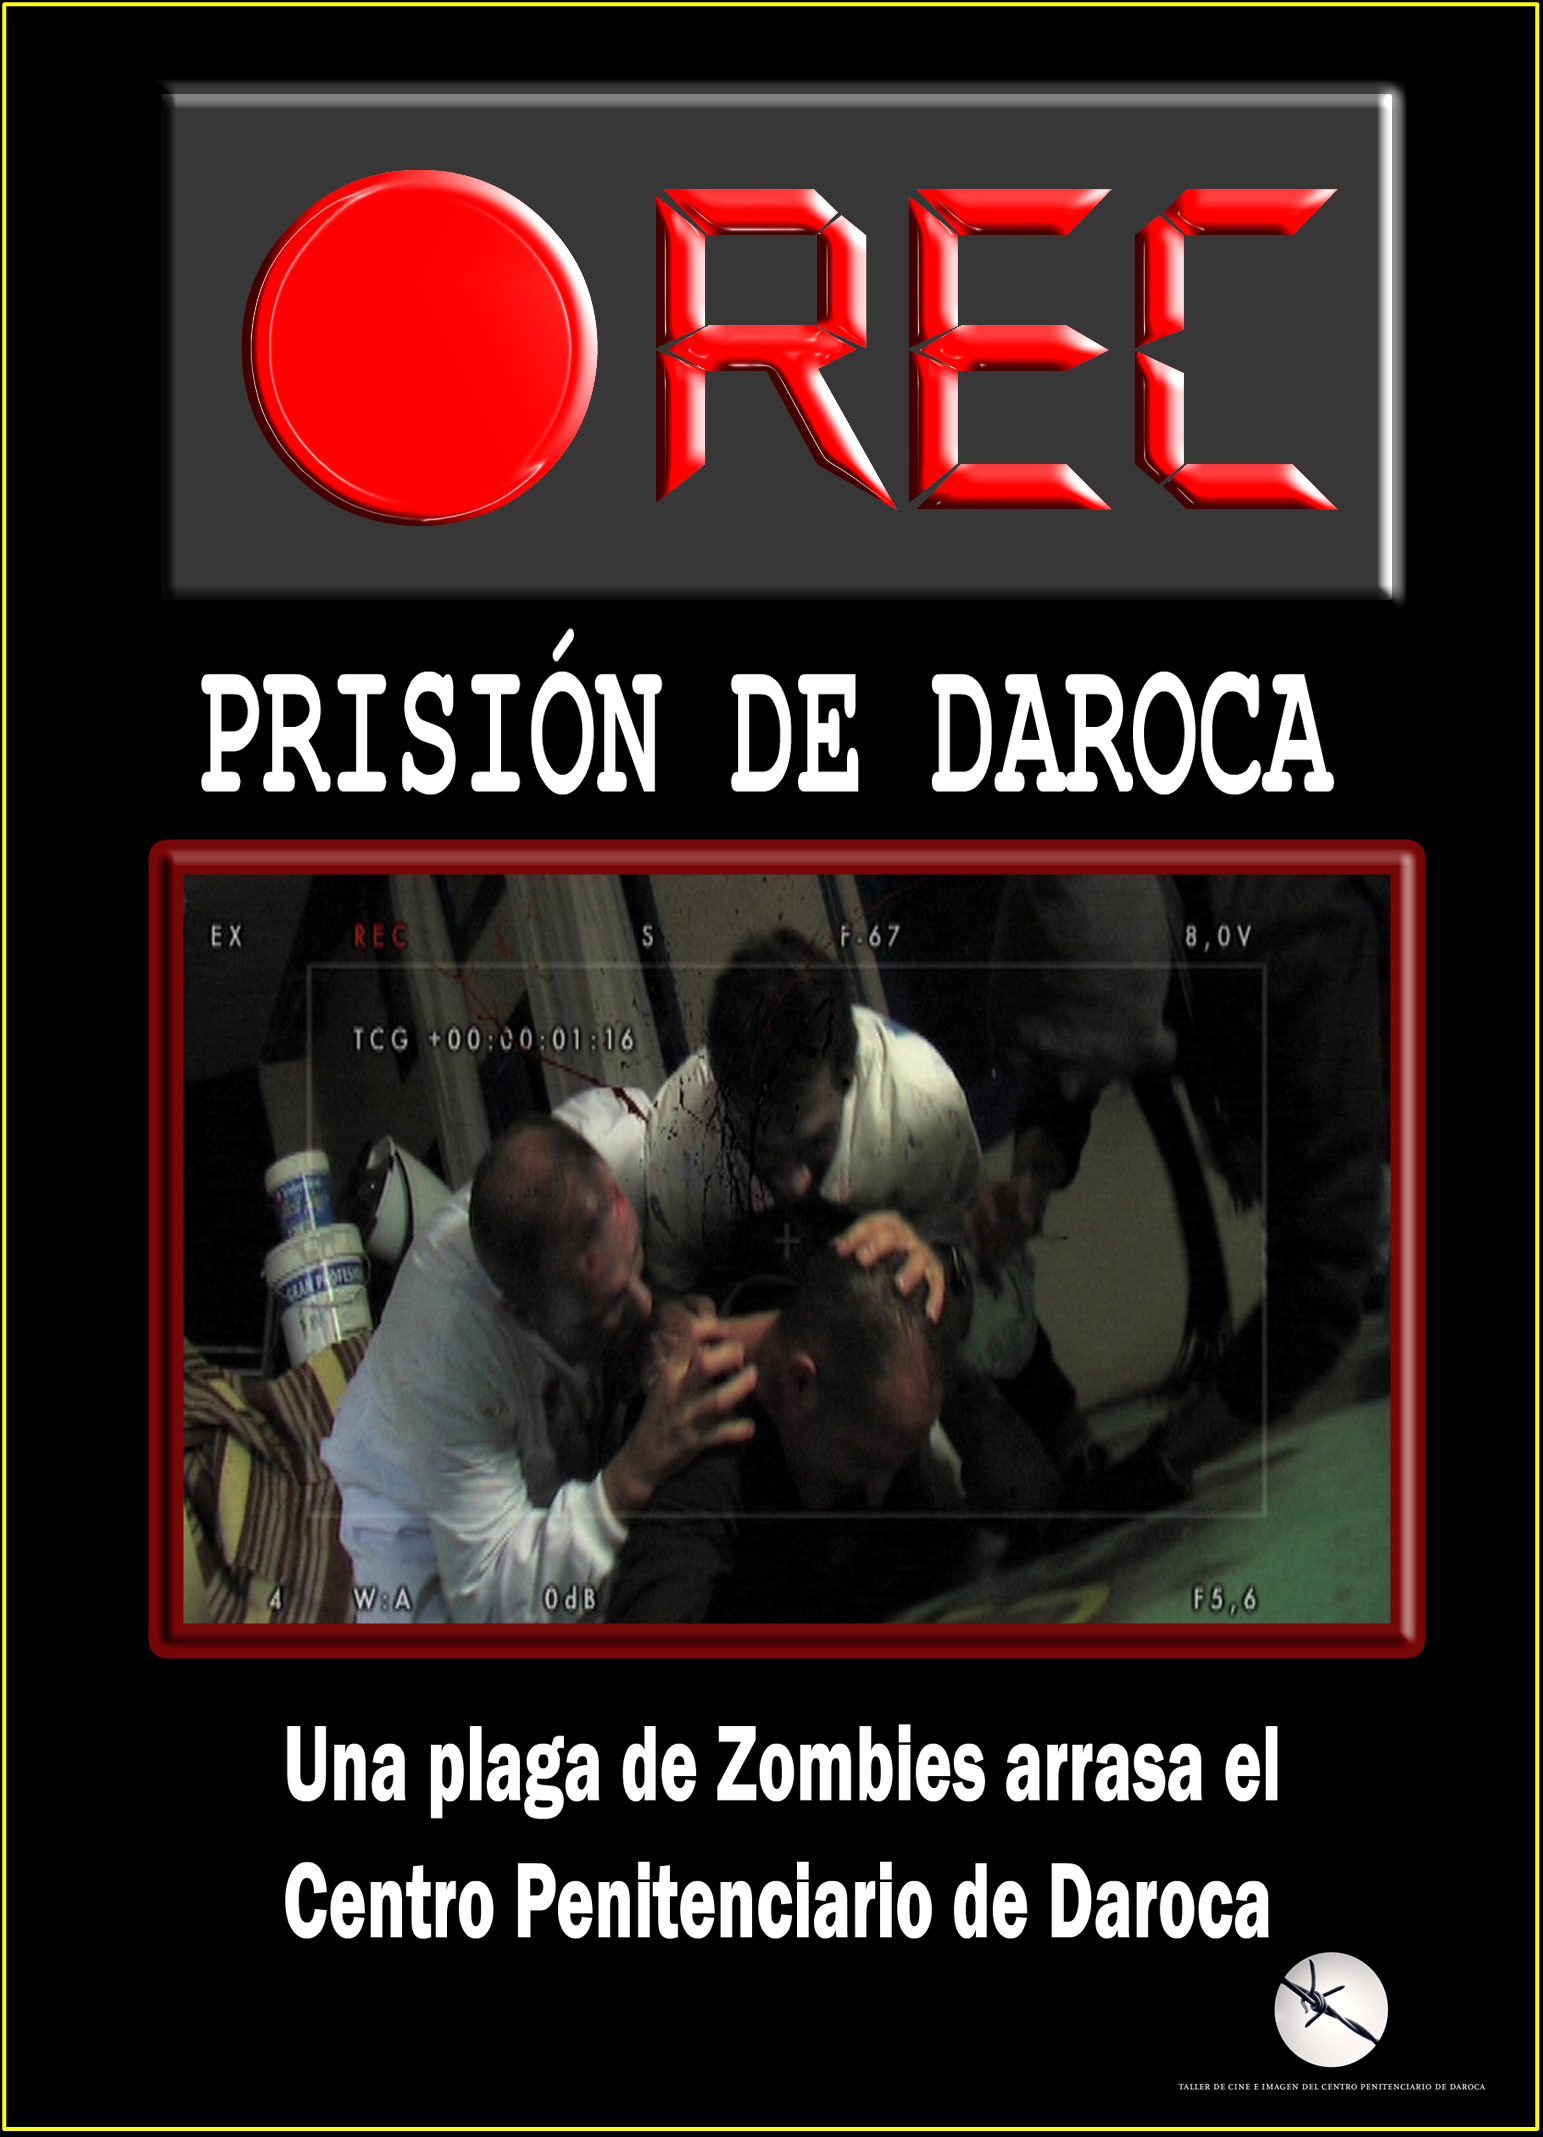 "REC-Prisión de Daroca". Estreno terrorífico.